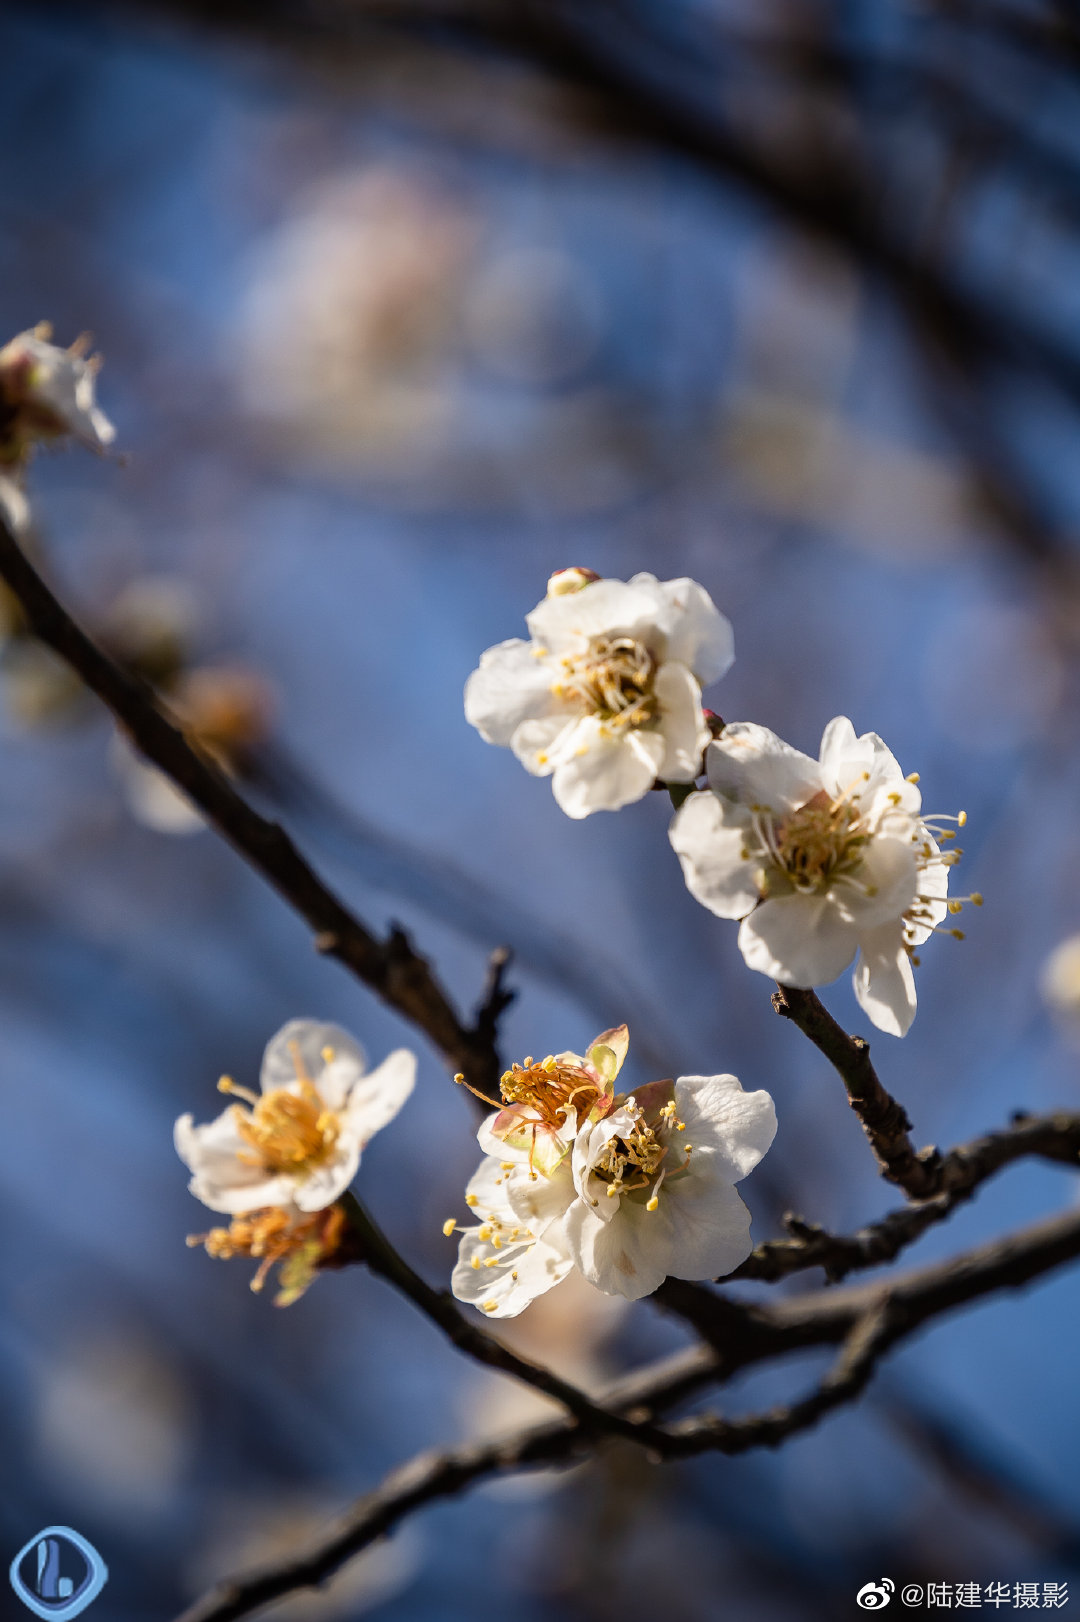 【携程攻略】武汉东湖梅园景点,梅须逊雪三分白，雪却输梅一段香。在黄鹤楼看到几株梅花，就让从未看…